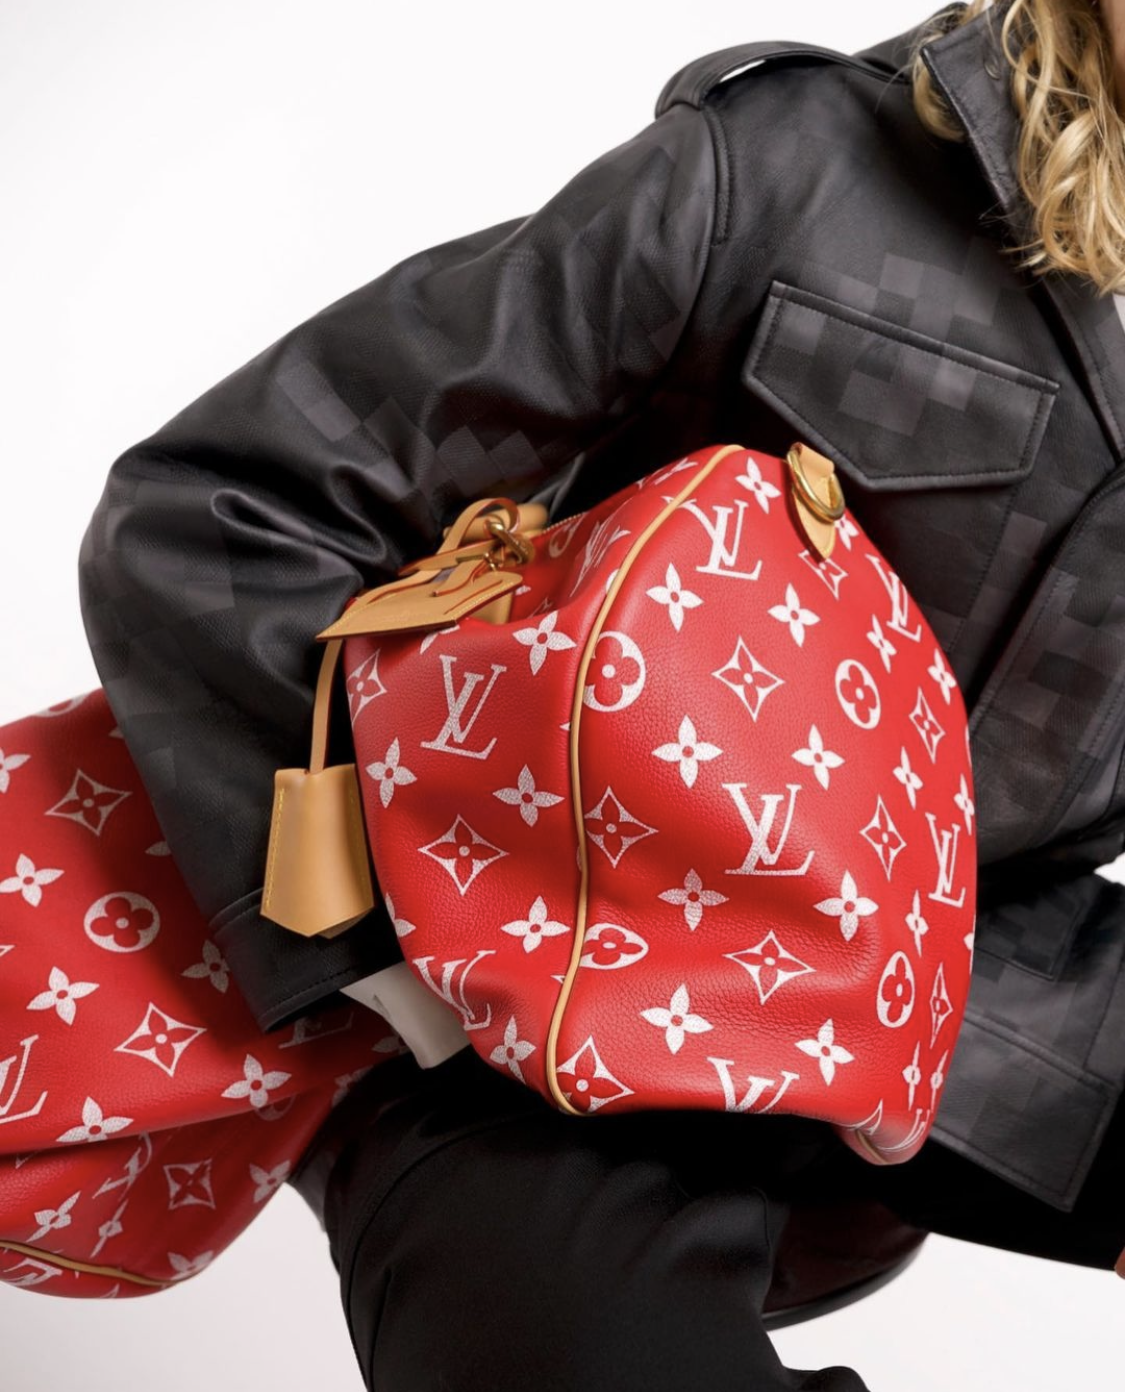 Louis Vuitton reveals New Classics line of men's bags - Duty Free